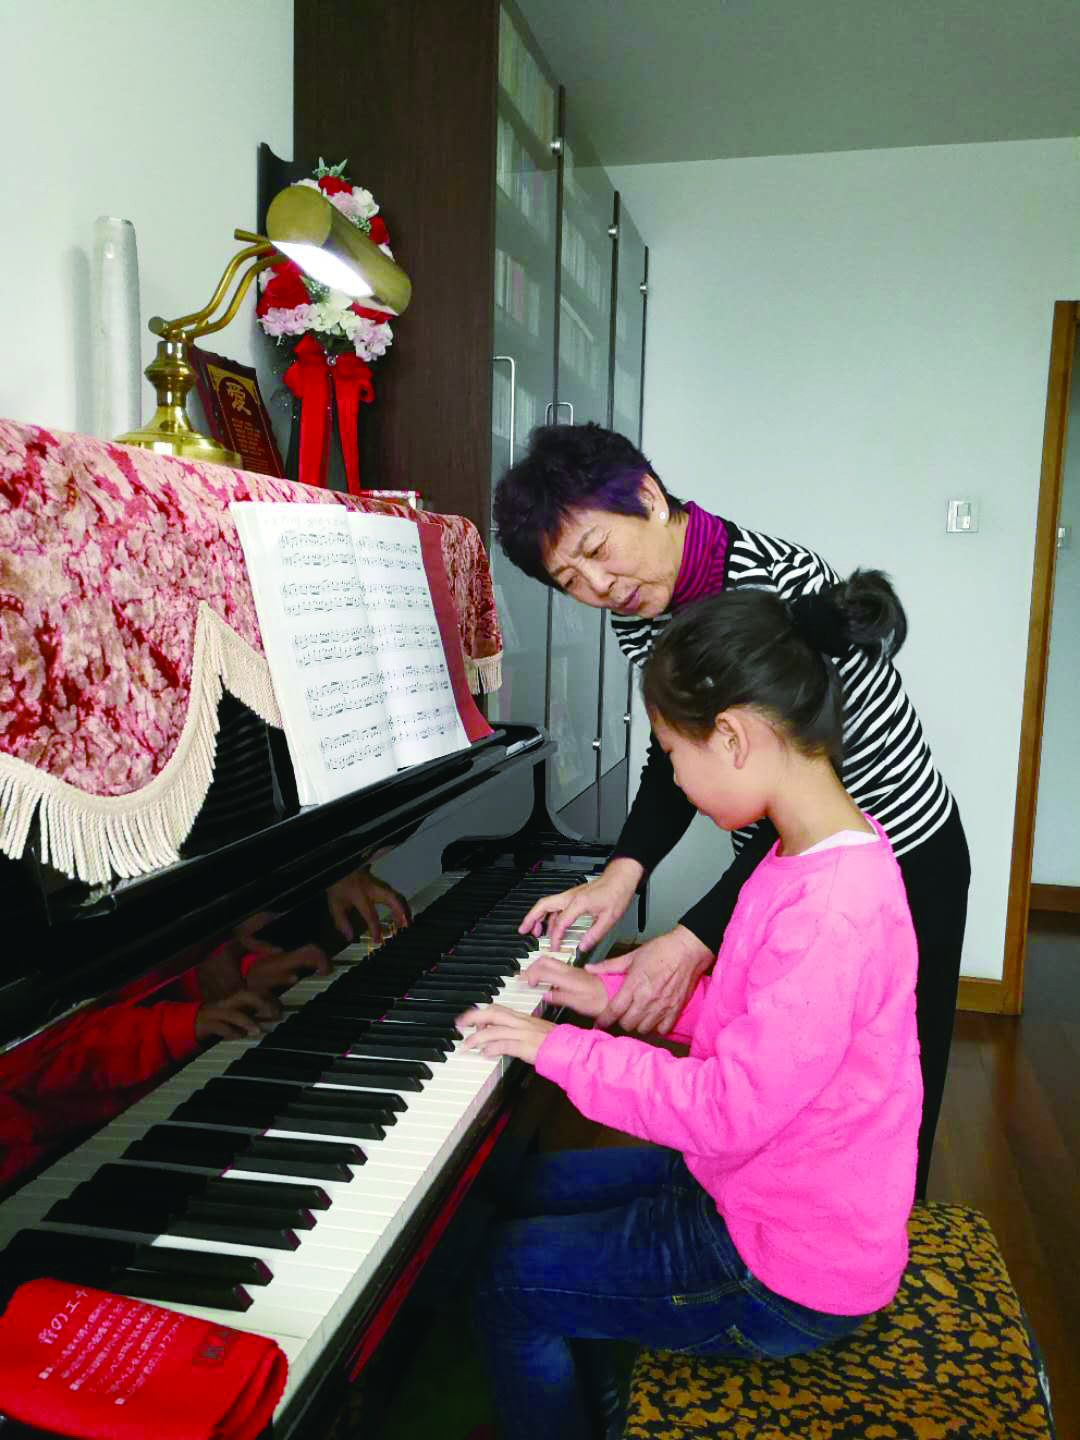 3、黄瑛老师辅导学生学习钢琴